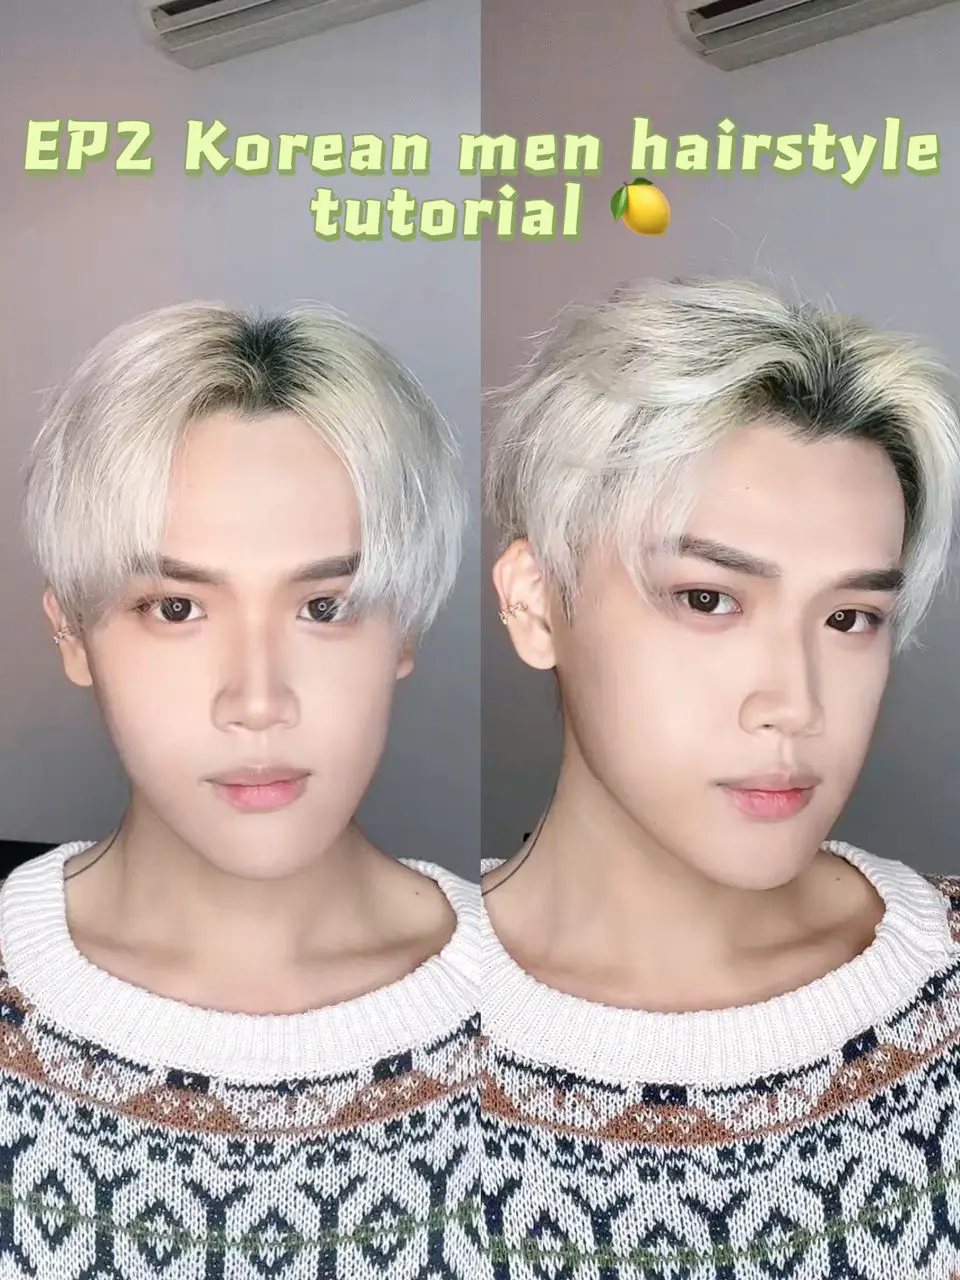 EP2 Korean men hairstyle tutorial | Galeri disiarkan oleh Leo Panda | Lemon8